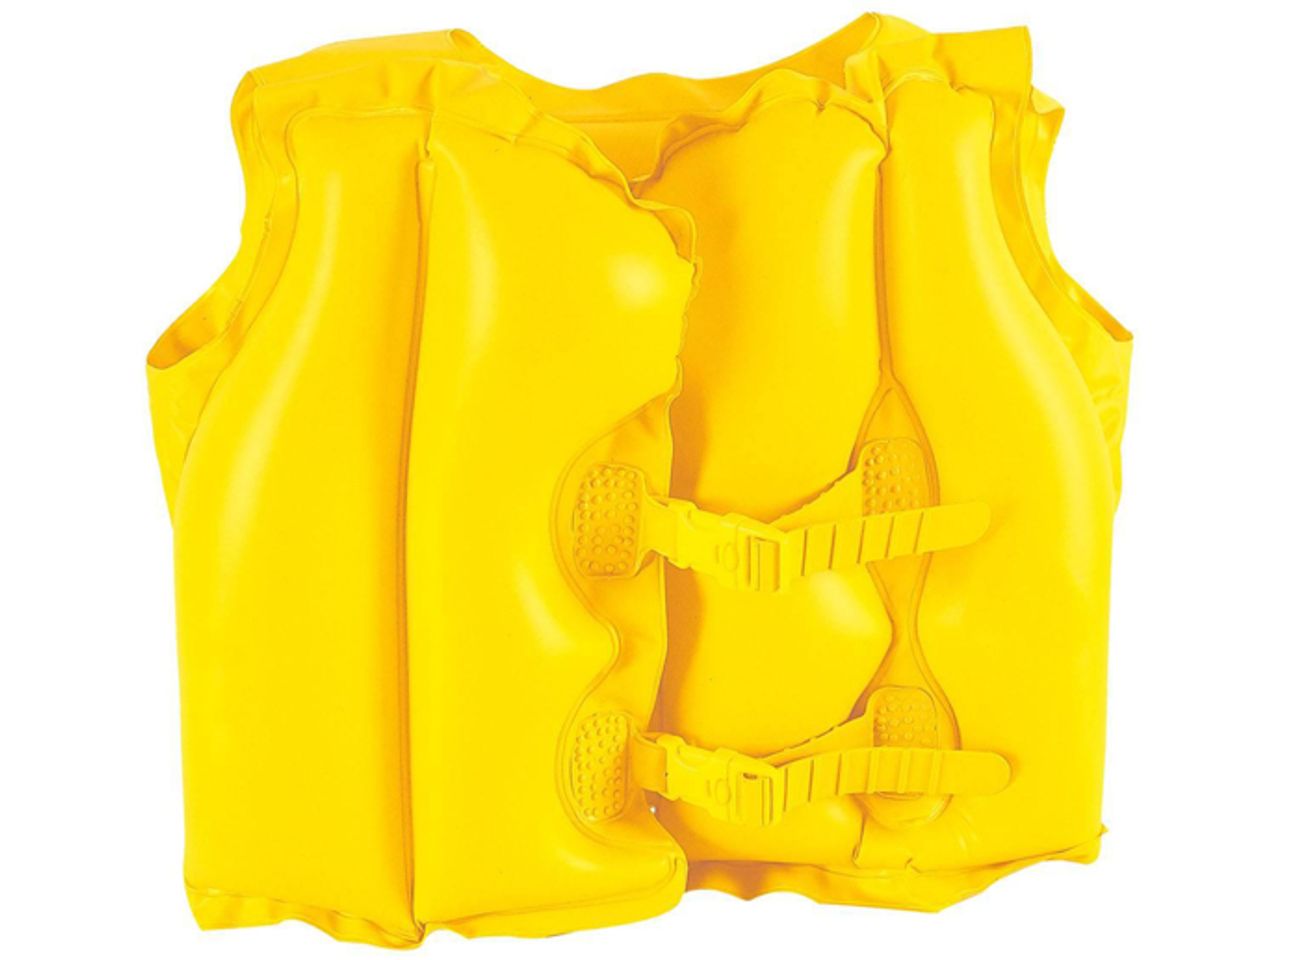 Thân áo mở cùng 2 khóa an toàn giúp cố định trên thân để không bị tuột khi hoạt động dưới nước